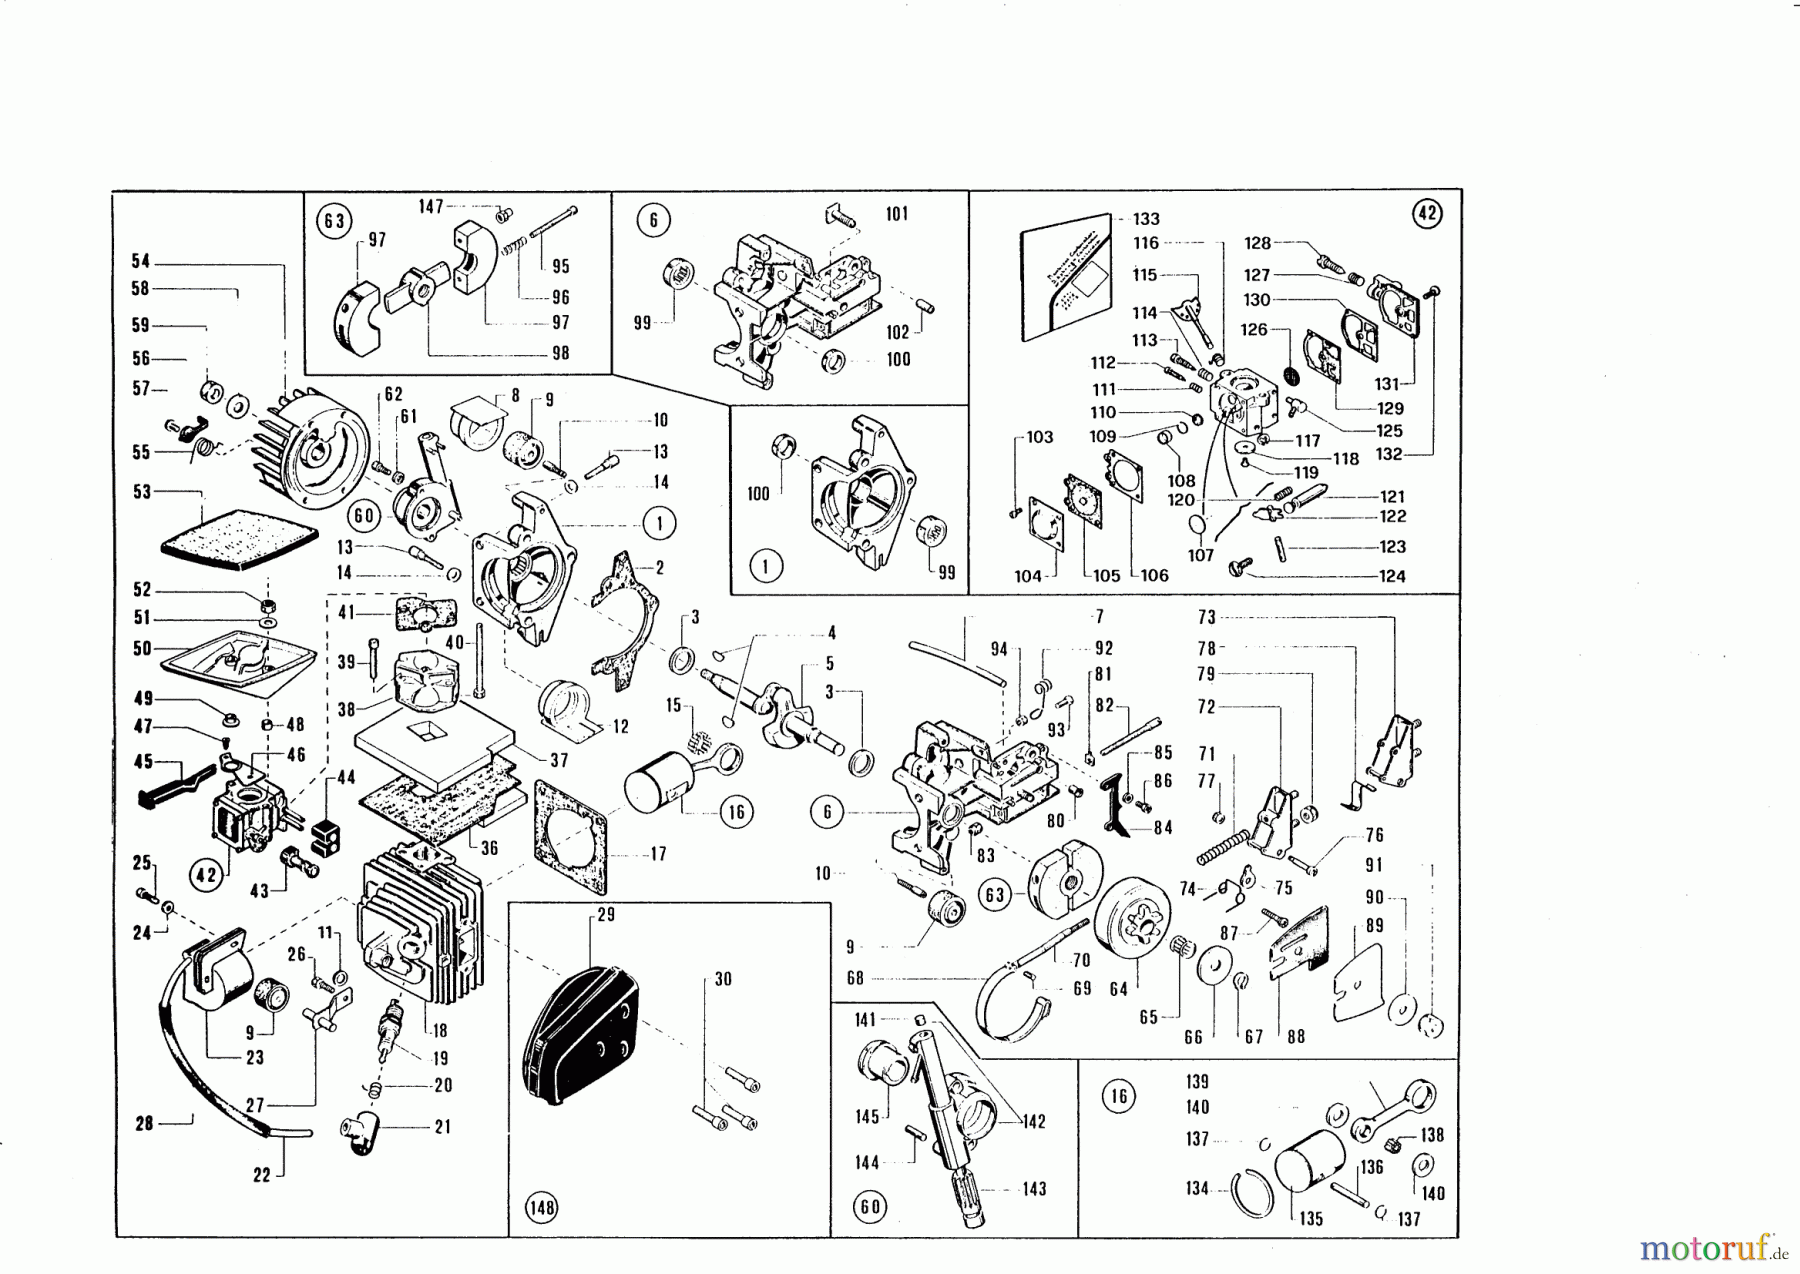  AL-KO Gartentechnik Kettensägen KB 4500  ab 09/1992 Seite 1